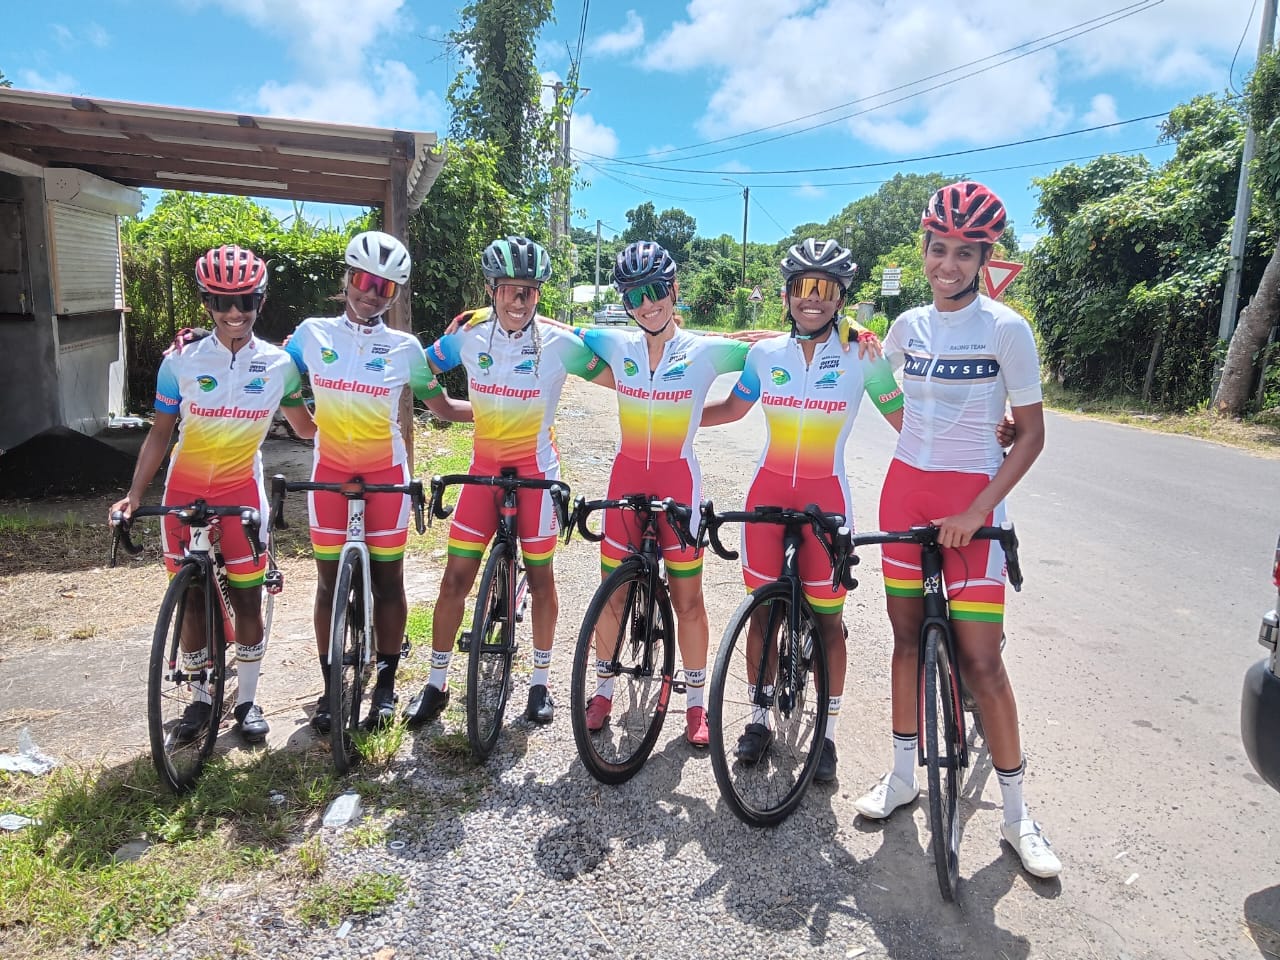     Cyclisme : 19 Nations présentes ce week-end en Guadeloupe aux Championnats de la Caraïbe 

